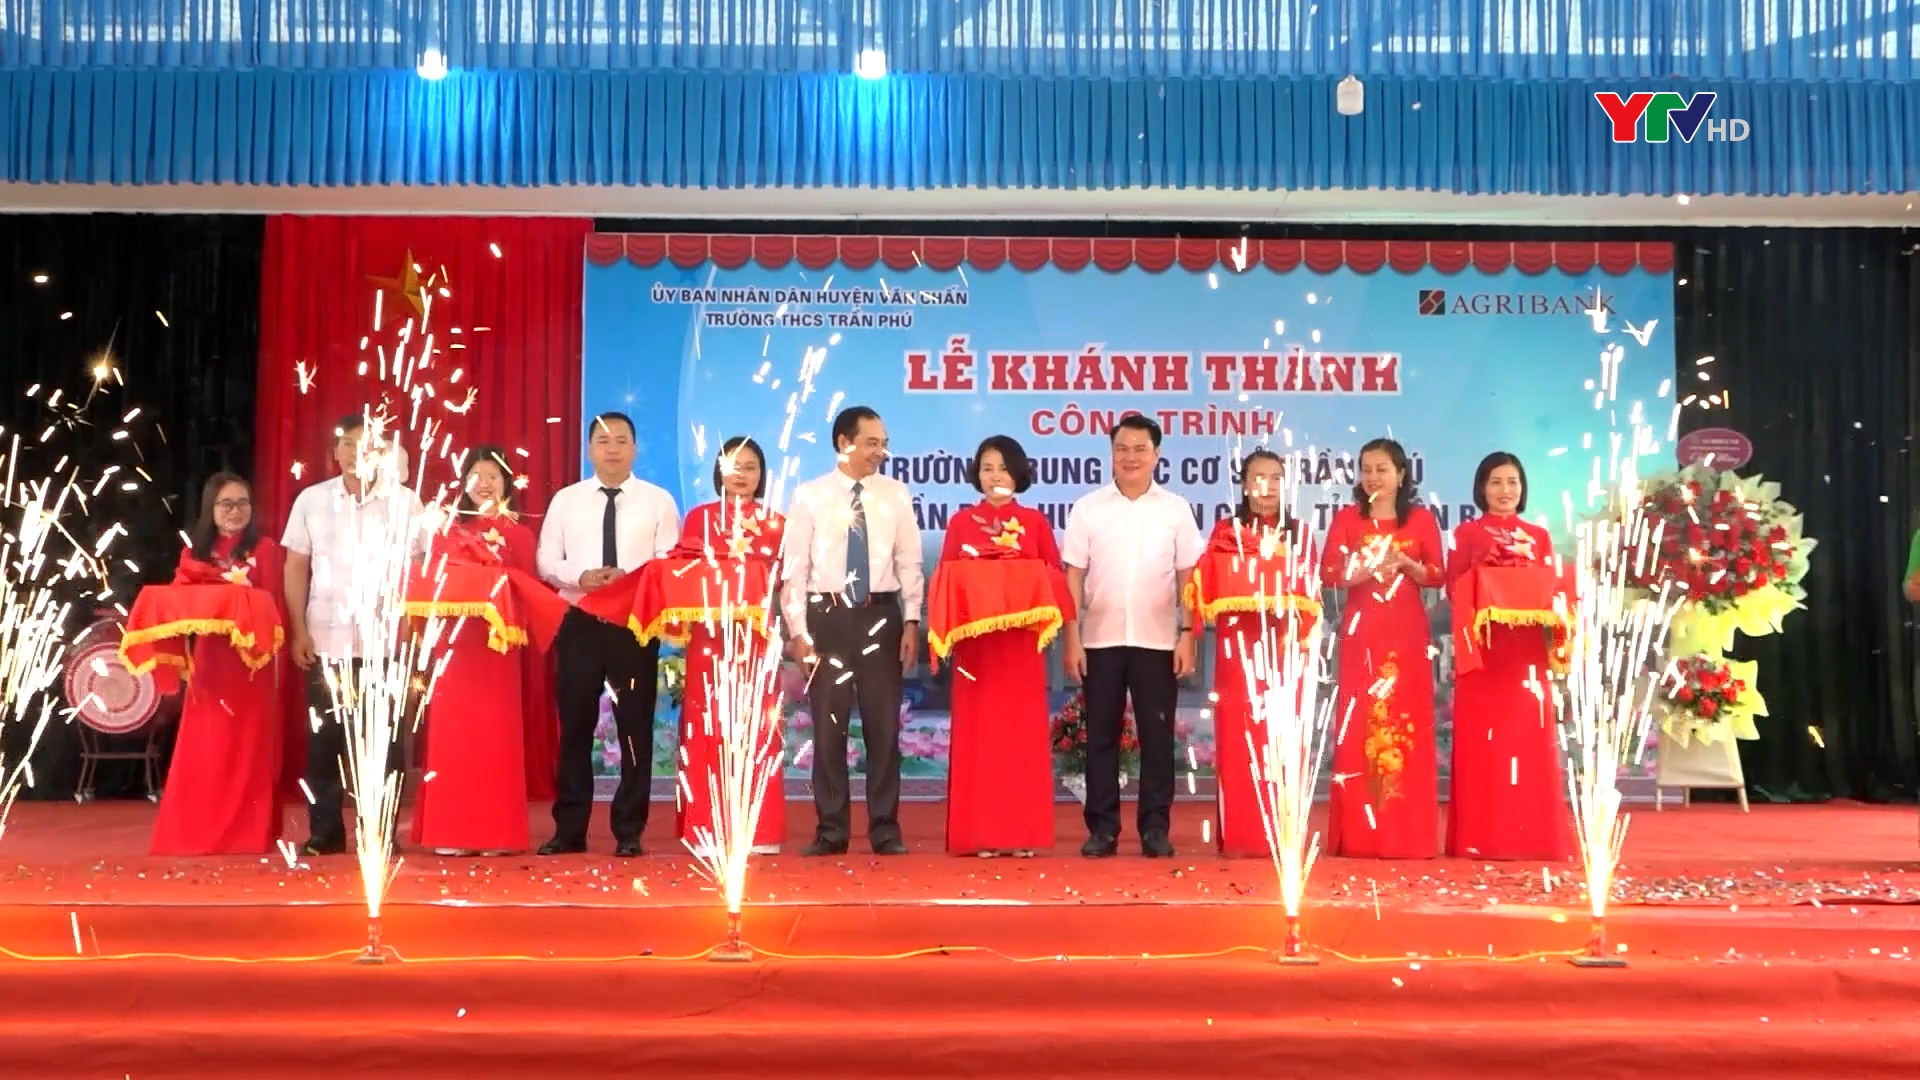 Agribank chi nhánh Yên Bái khánh thành công trình trường THCS Trần Phú, huyện Văn Chấn